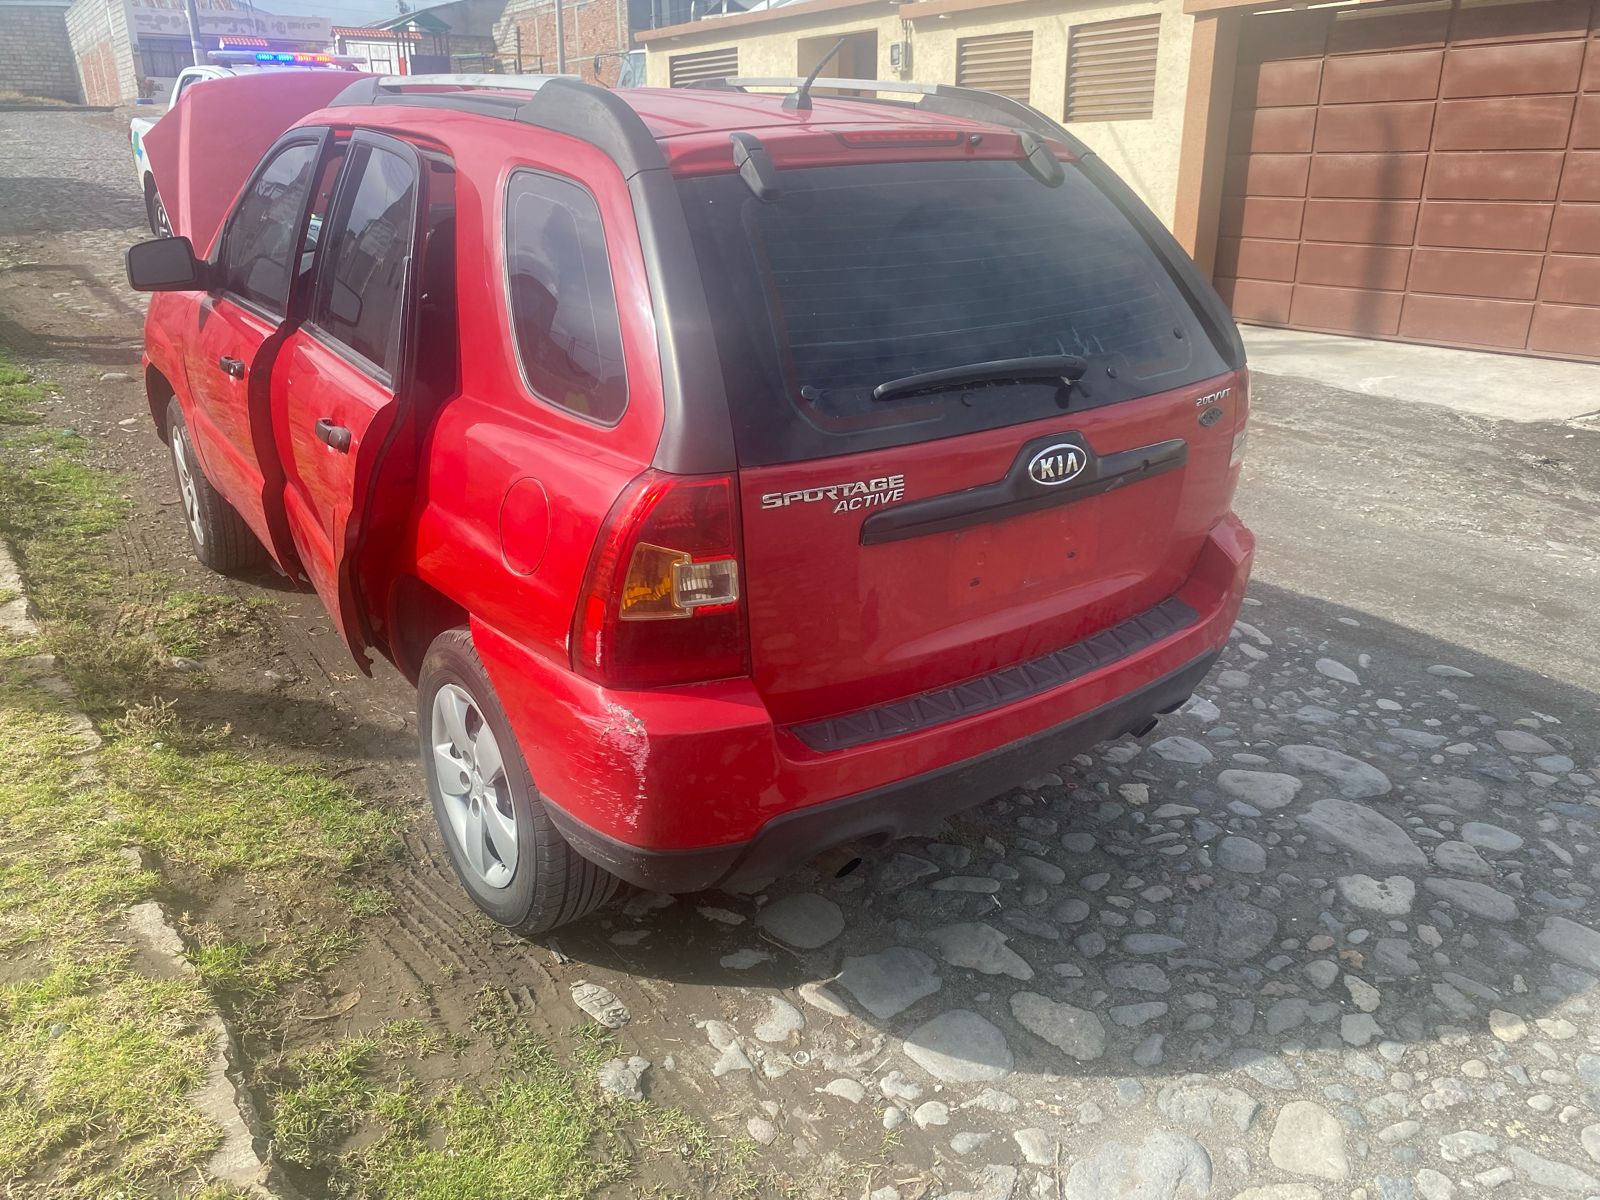 Policía de Ambato recupera un carro reportado como robado en Quito.